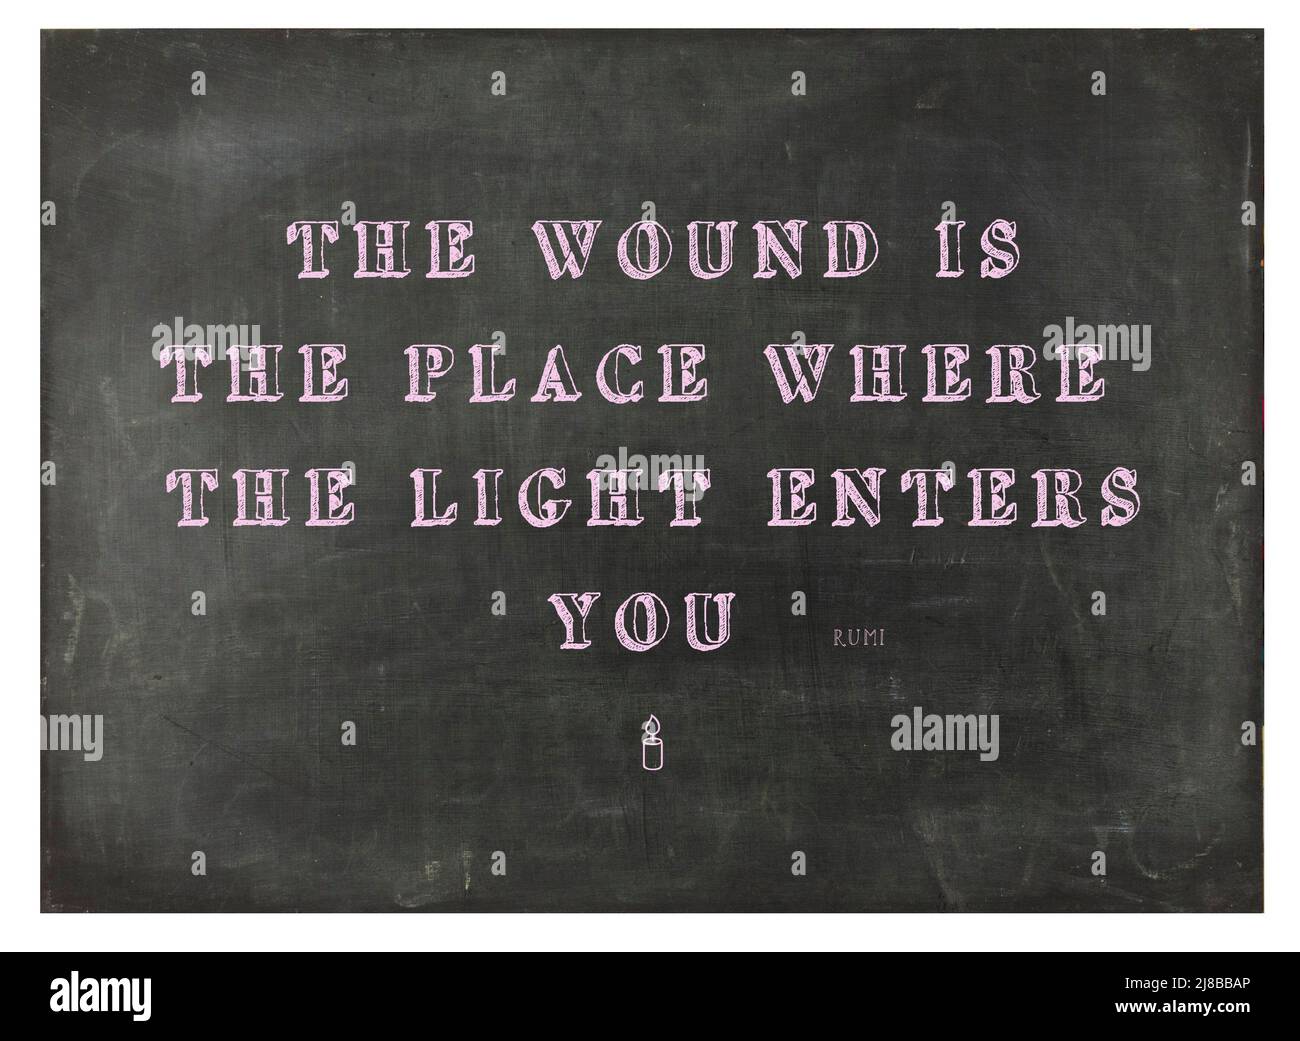 Ein inspirierendes Zitat aus den Lehren von Rumi, auf einer Tafel zum Thema spirituelle Erleuchtung - Stock Photography Stockfoto